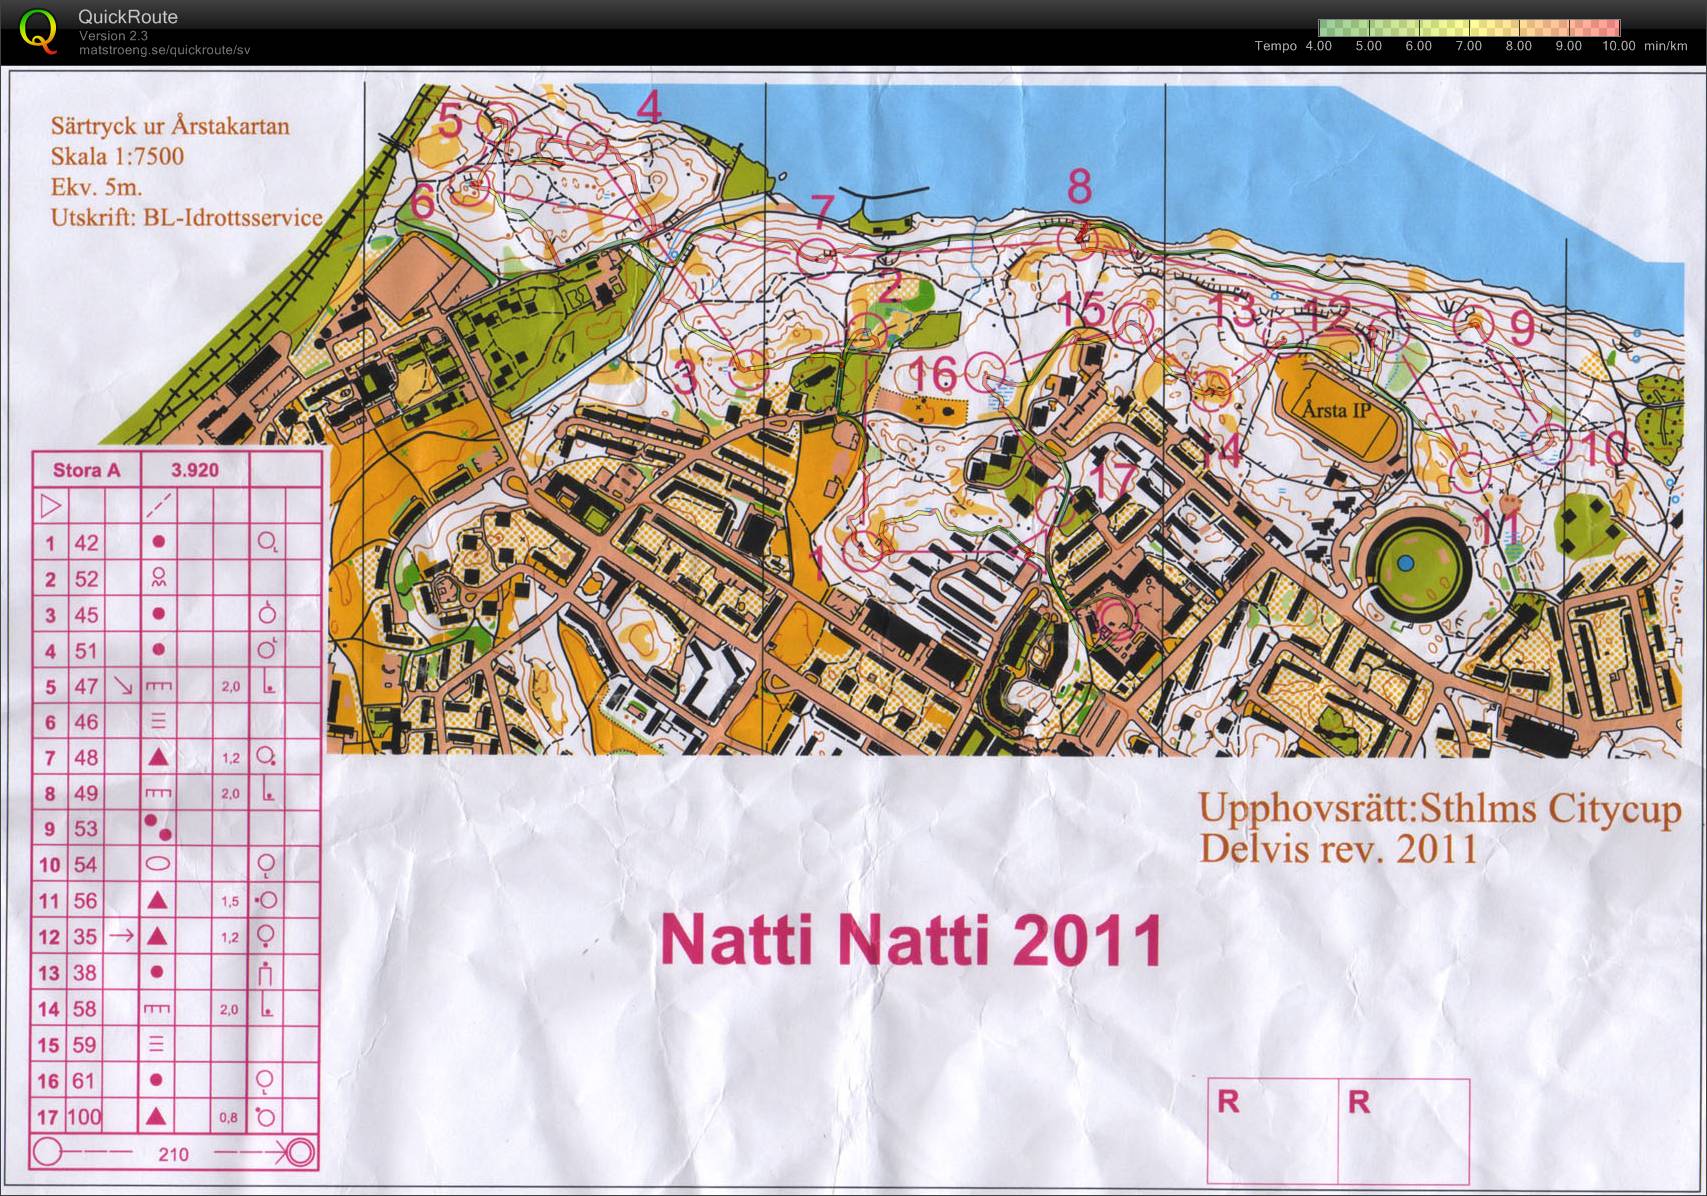 Natti Natti (28/09/2011)